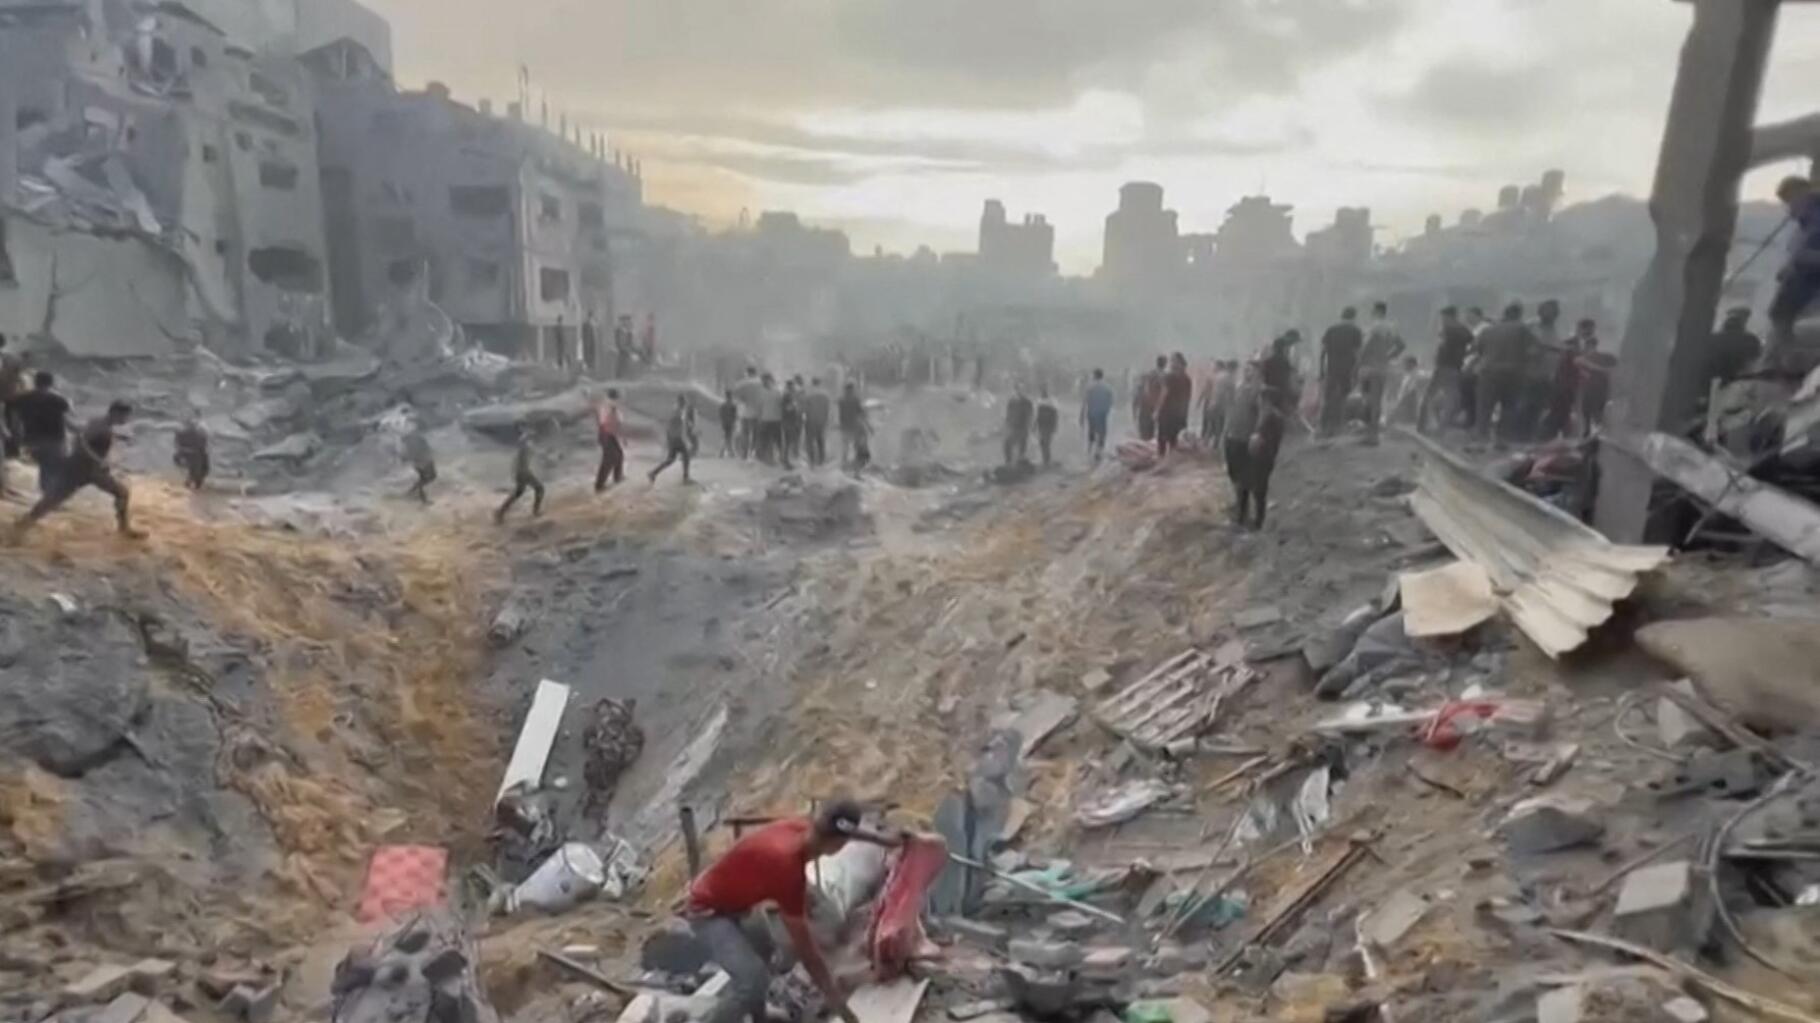   Camp de réfugiés de Jabaliya bombardé, deux enfants français tués : le point sur la situation à Gaza  